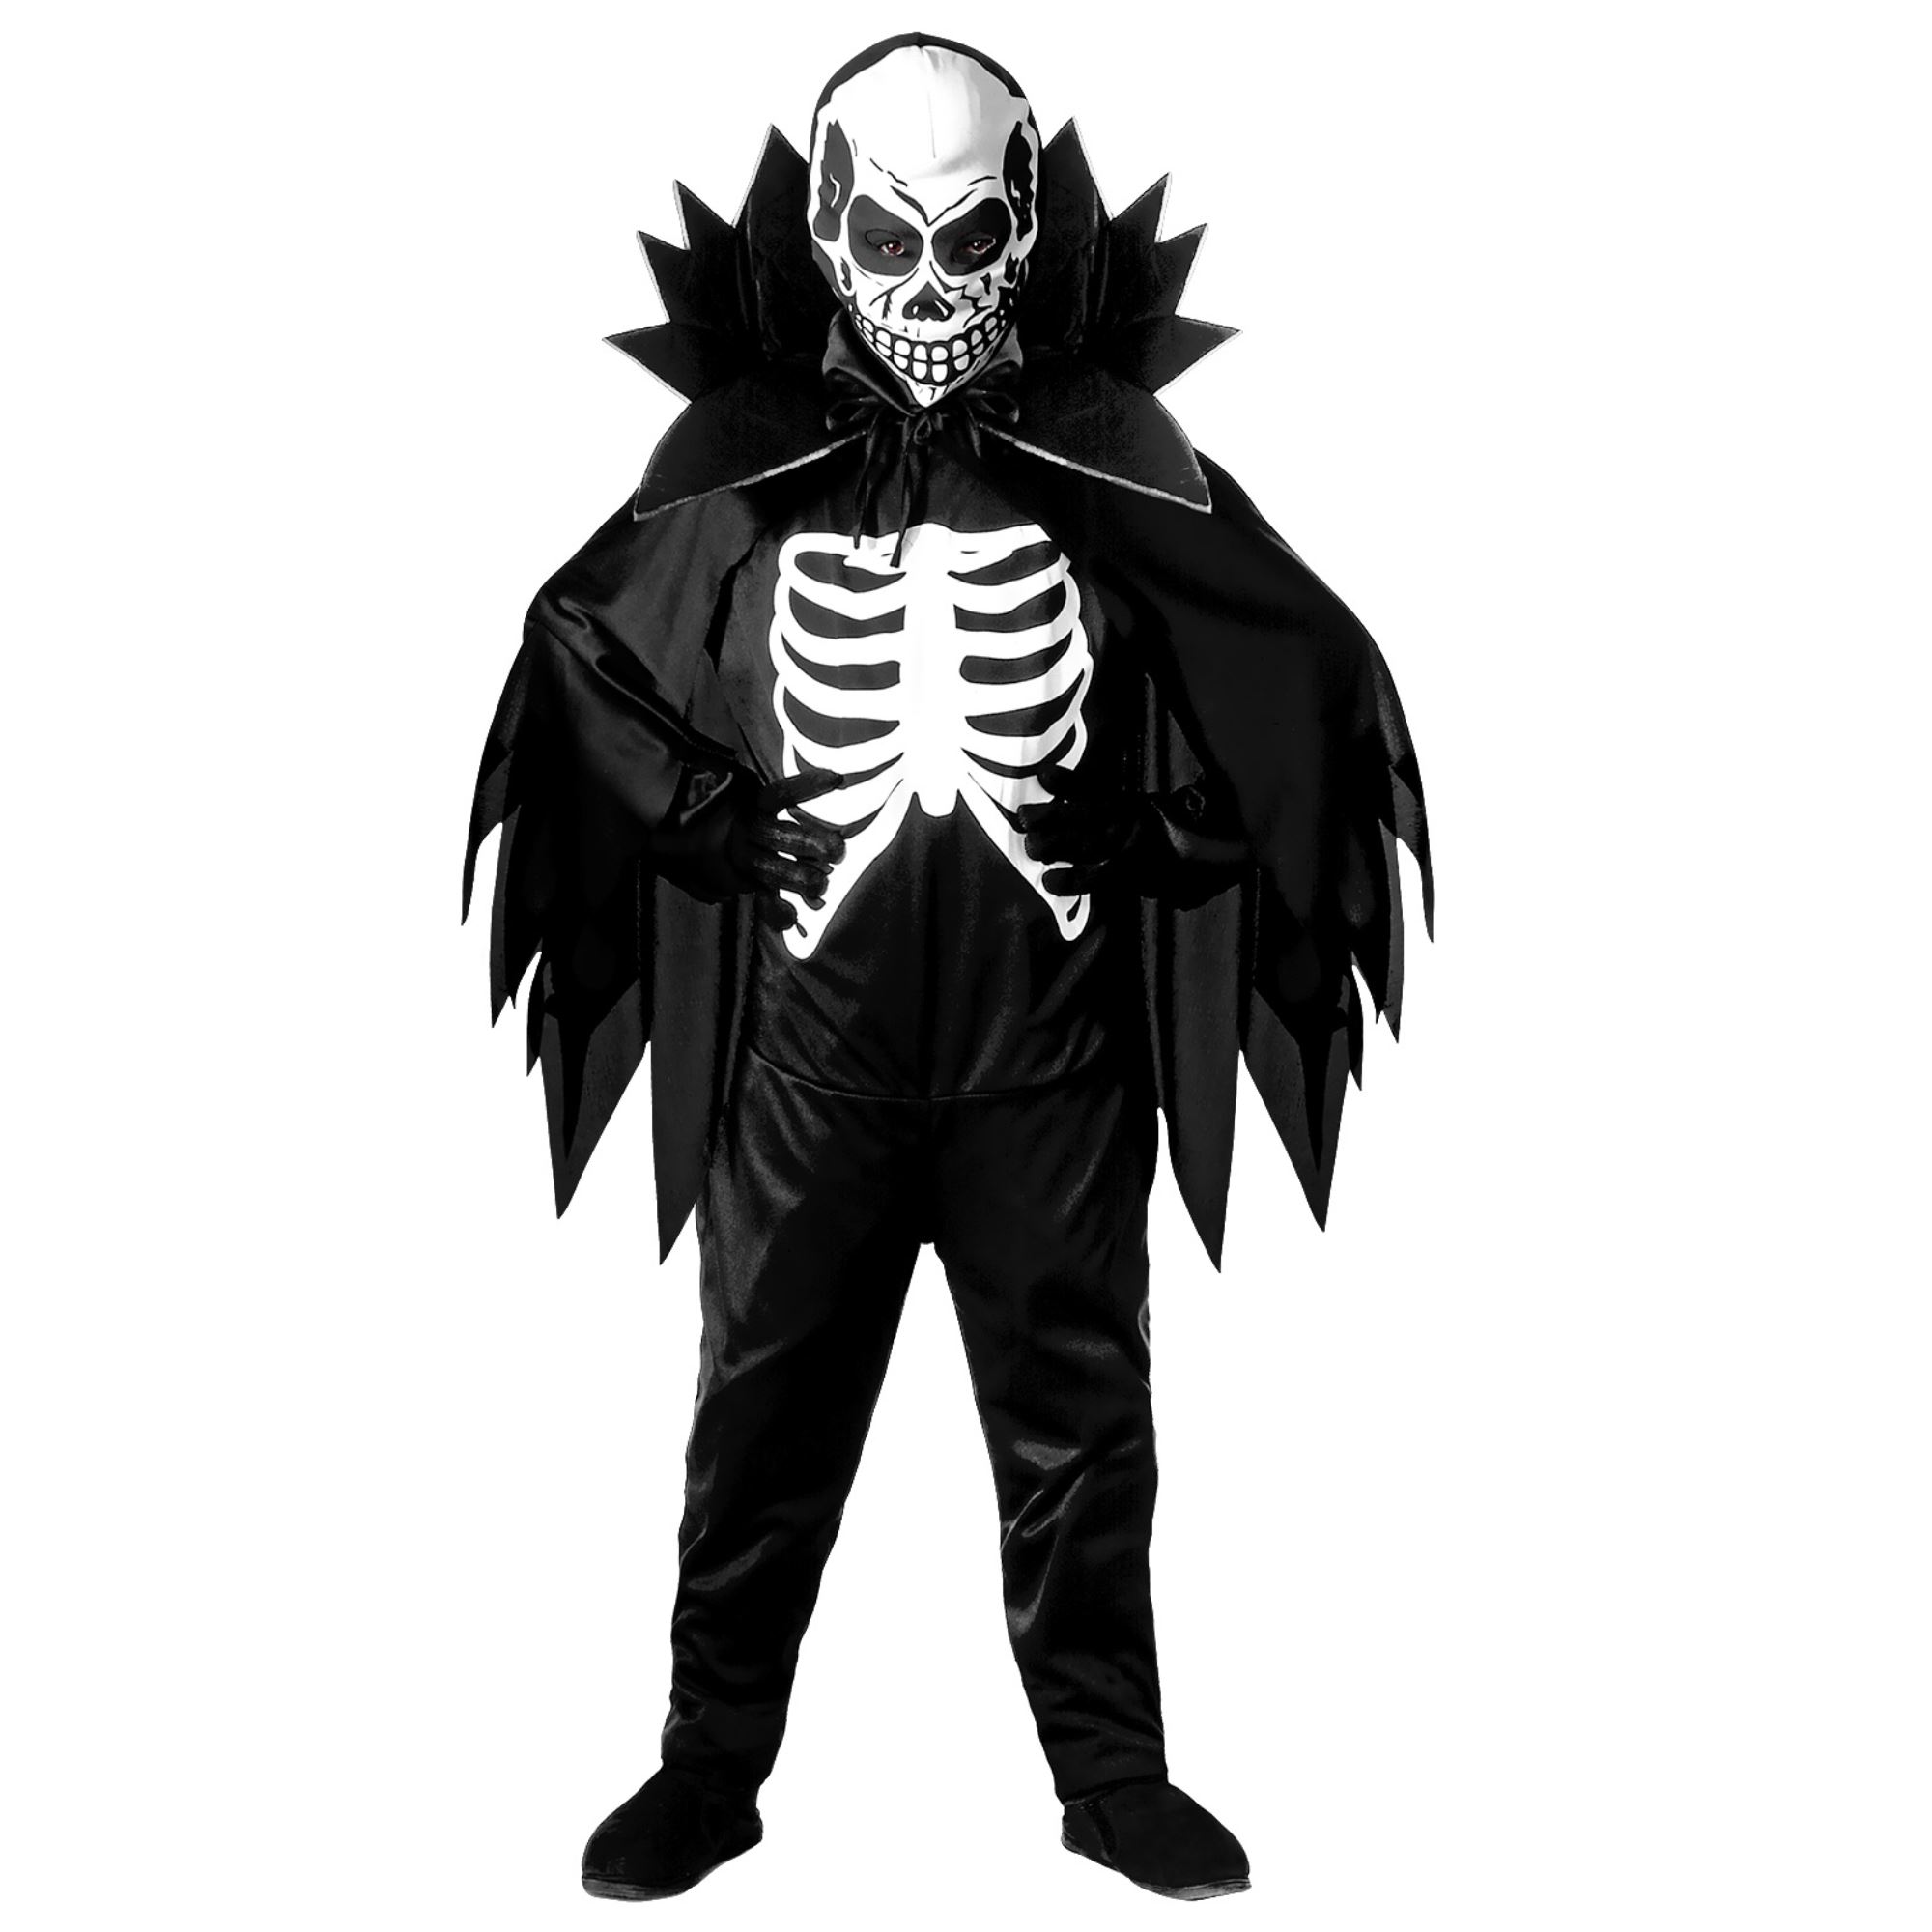 KINDER SKELETT Kostüm Halloween Jungen Knochenmann Fasching Skelettkostüm